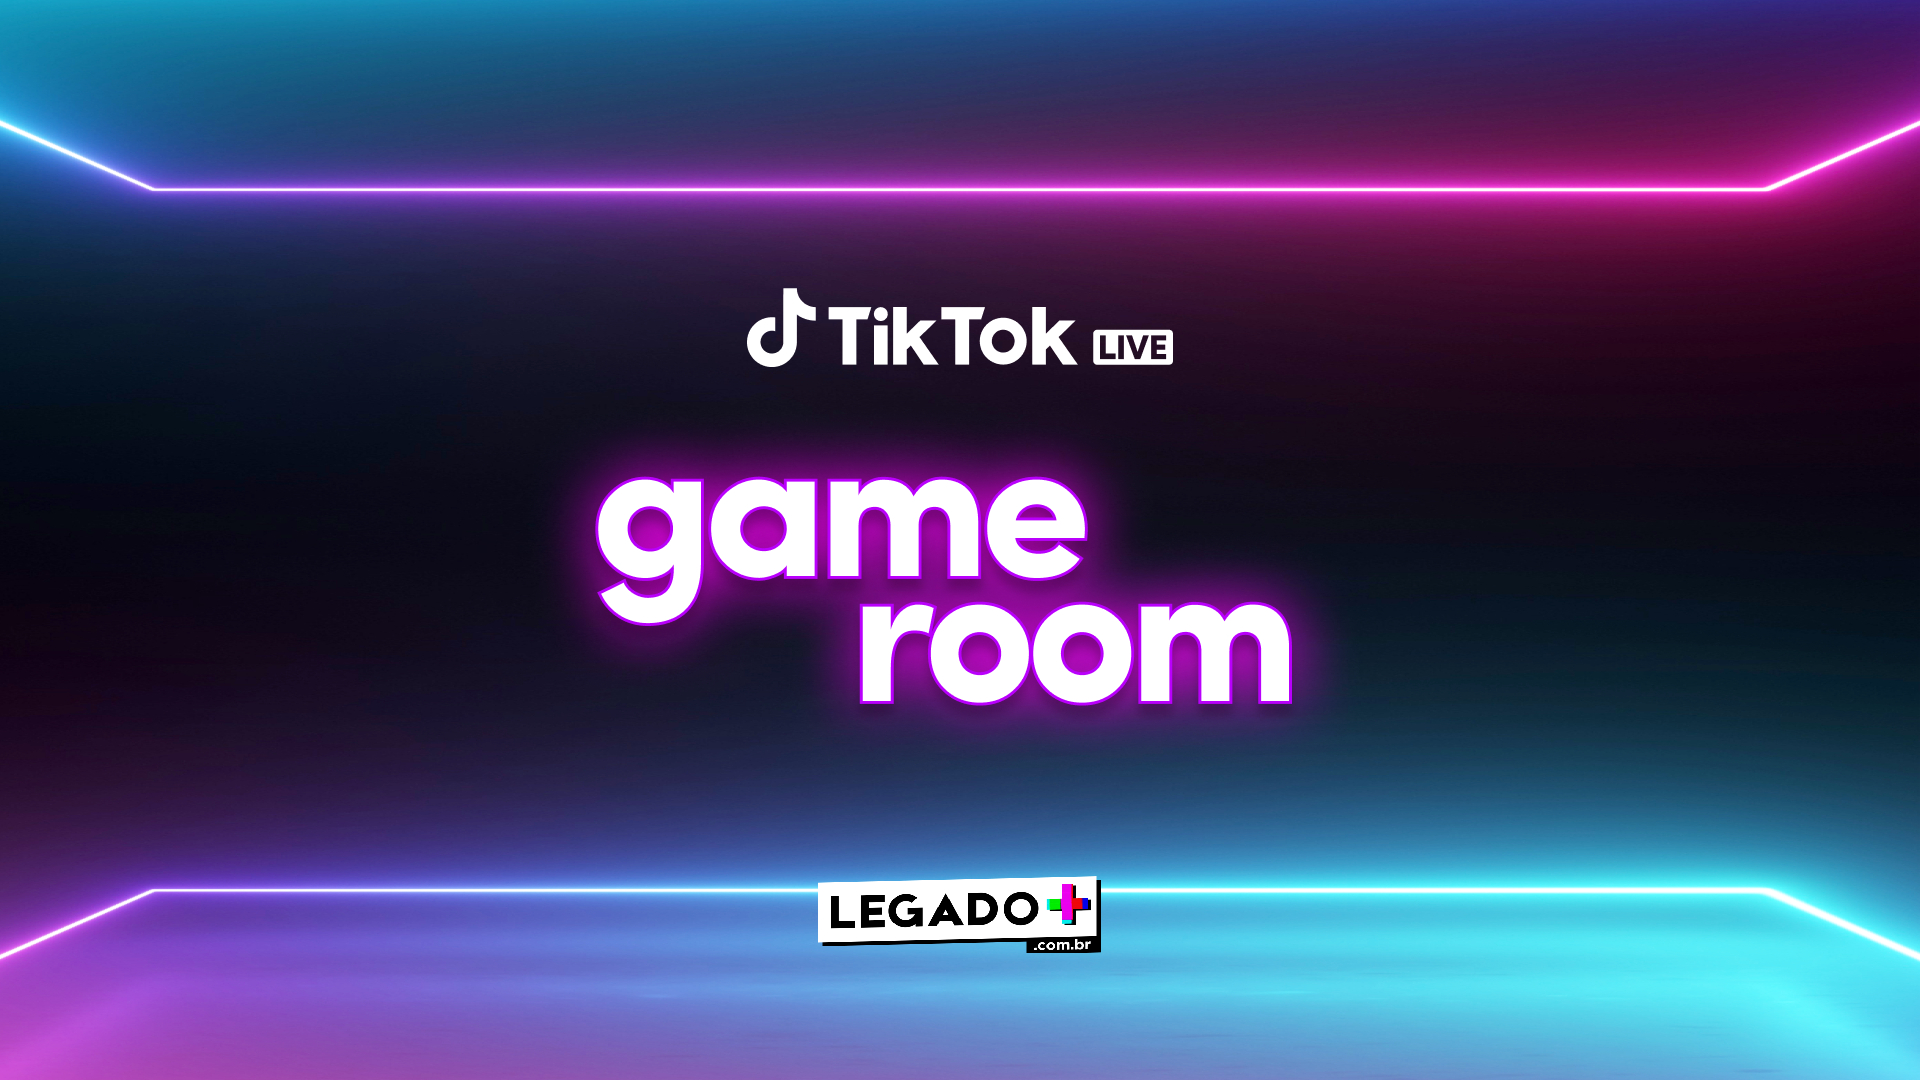 TikTok lança hoje o Game Room, com lives mensais para a comunidade gamer